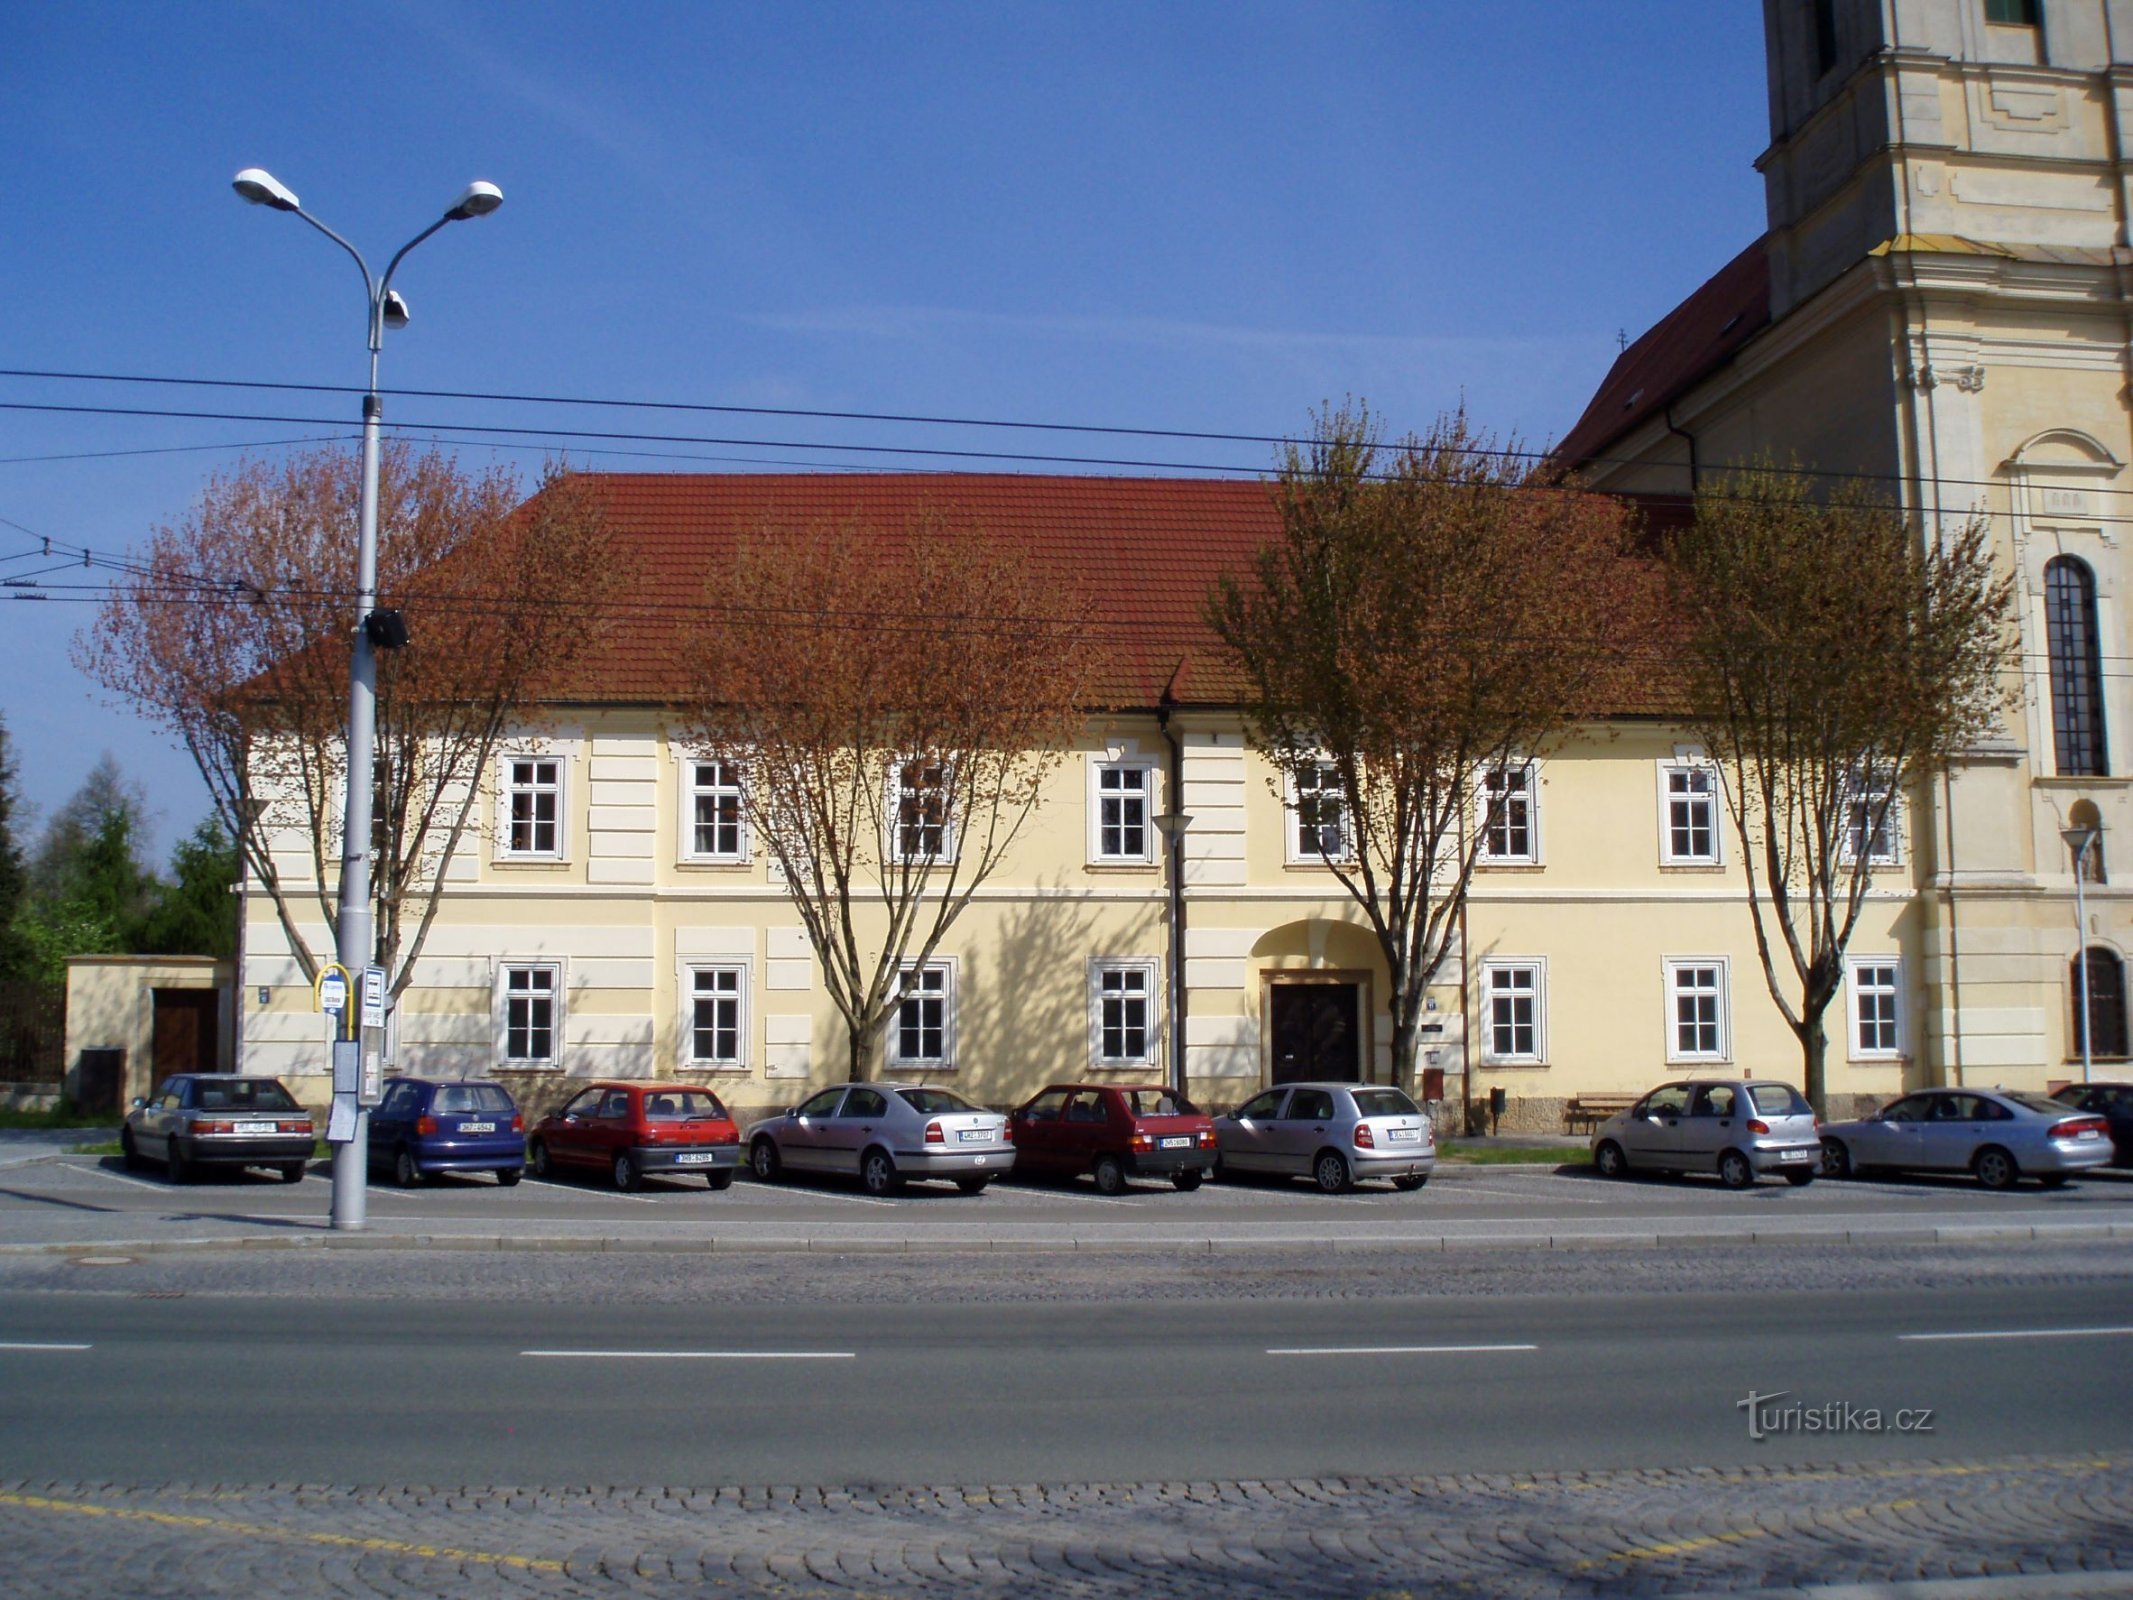 L'ancien monastère (Denisovo náměstí n° 26 et 172, Hradec Králové, 28.4.2010/XNUMX/XNUMX)